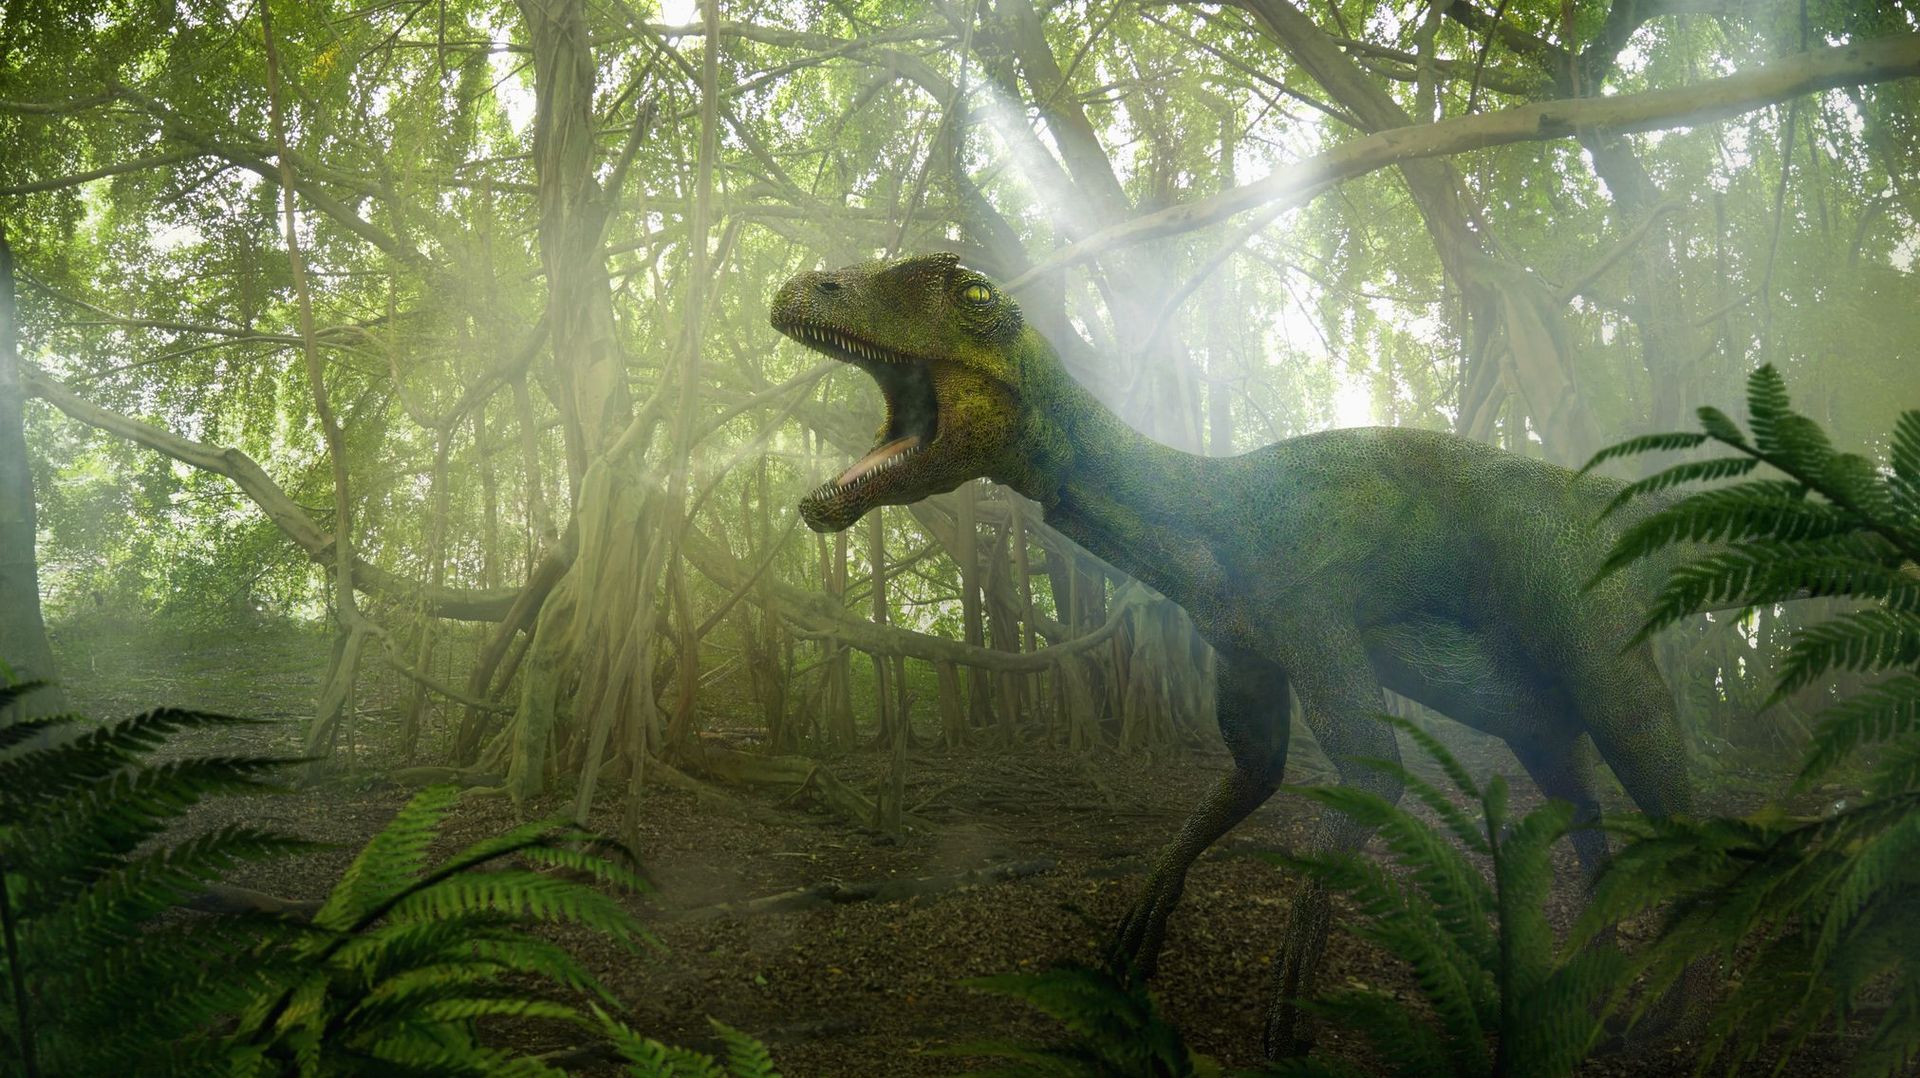 Les dinosaures auraient continué à prospérer sans l'astéroïde qui les a tués, selon les chercheurs